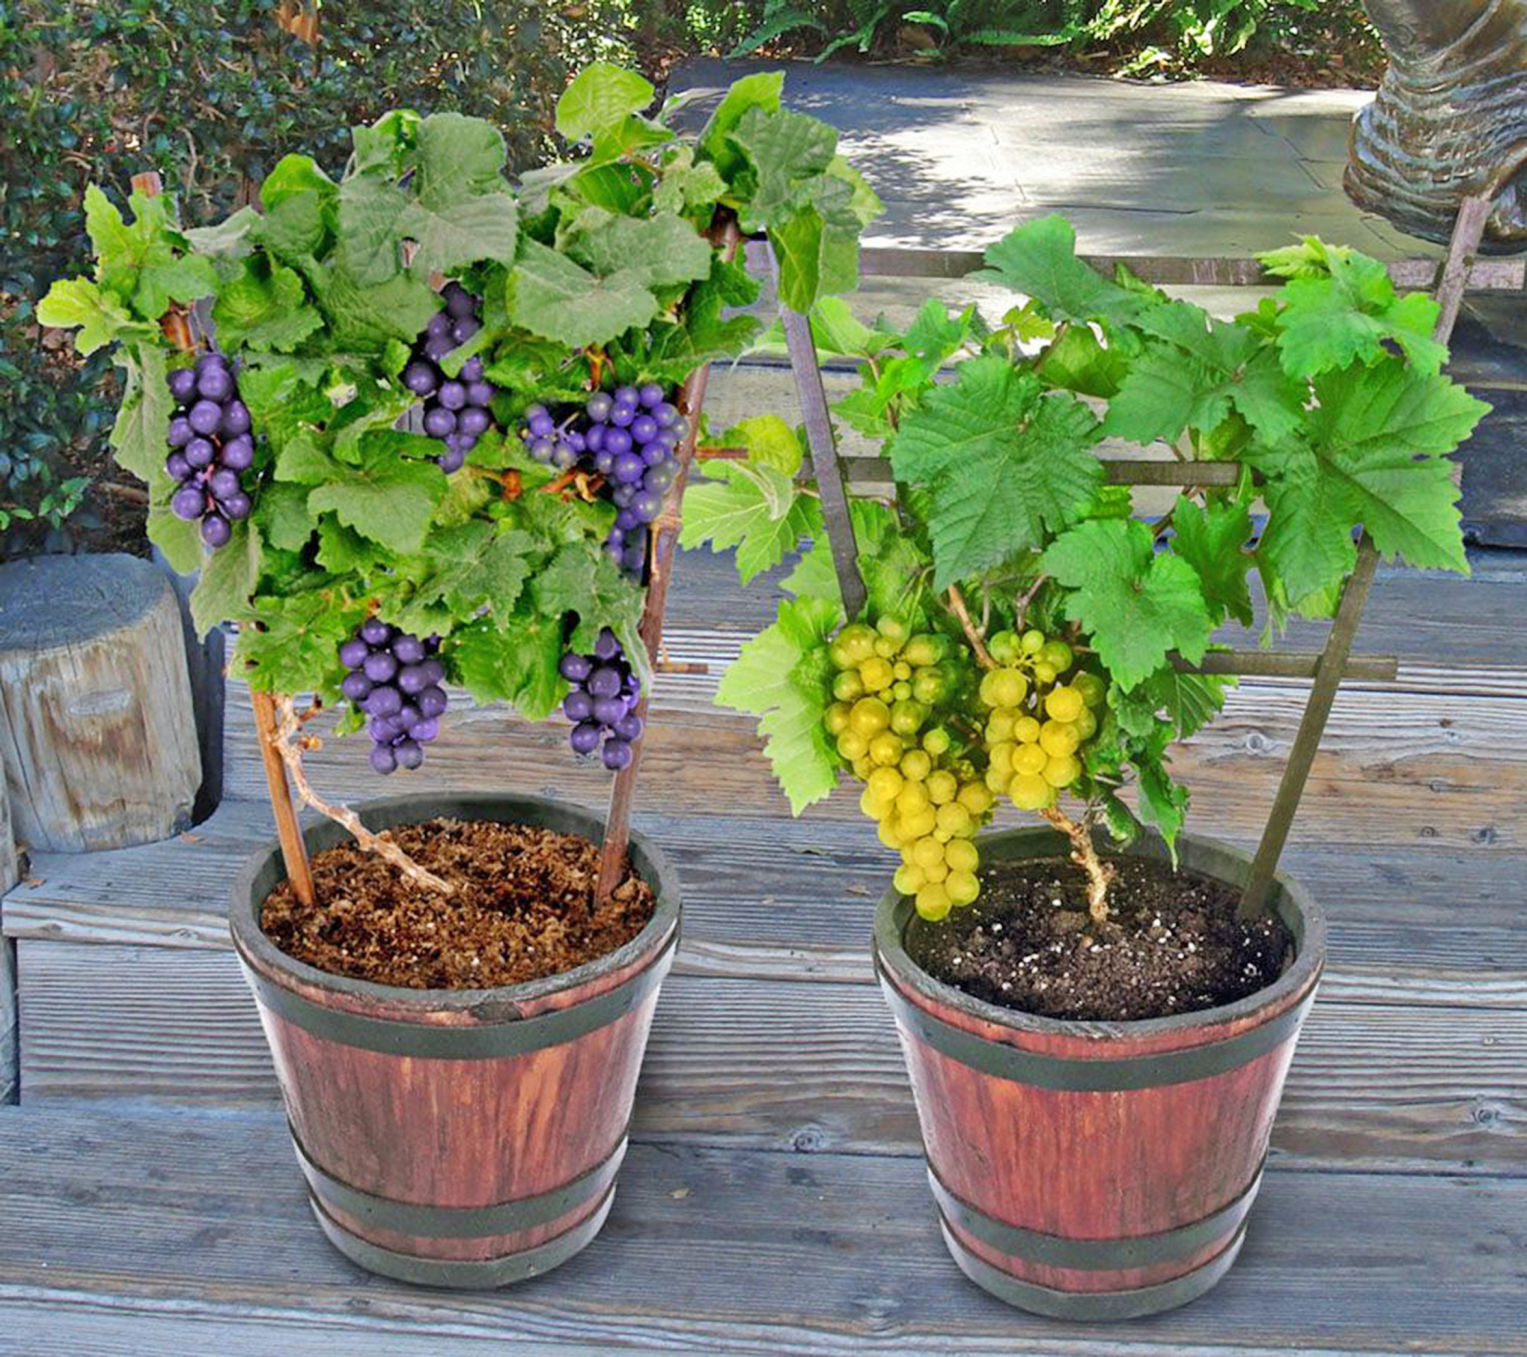  Cultivo de uvas em recipientes: Como cultivar videiras em vasos